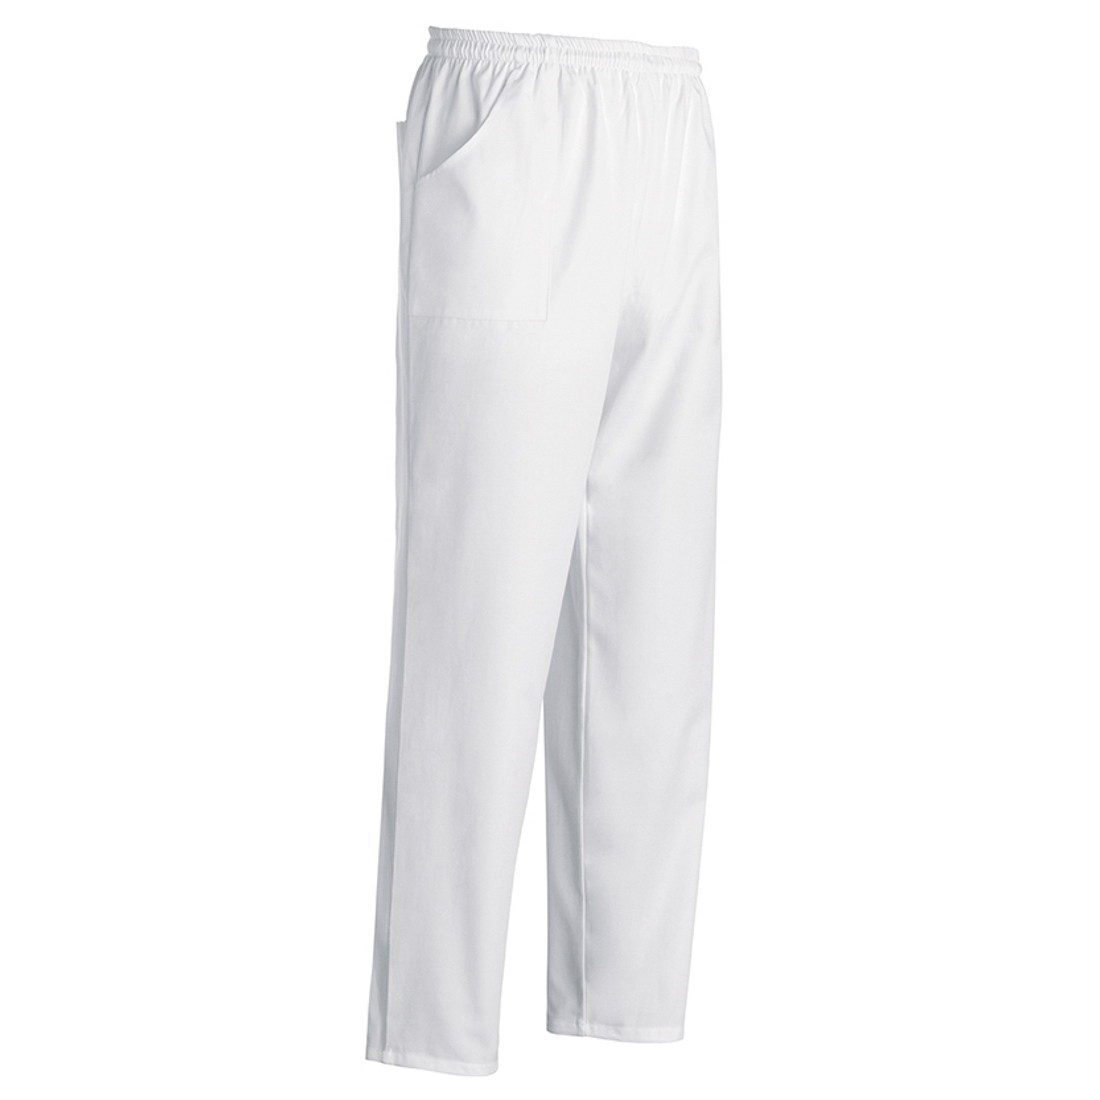 Pantalon Bazzy - Les vêtements de protection